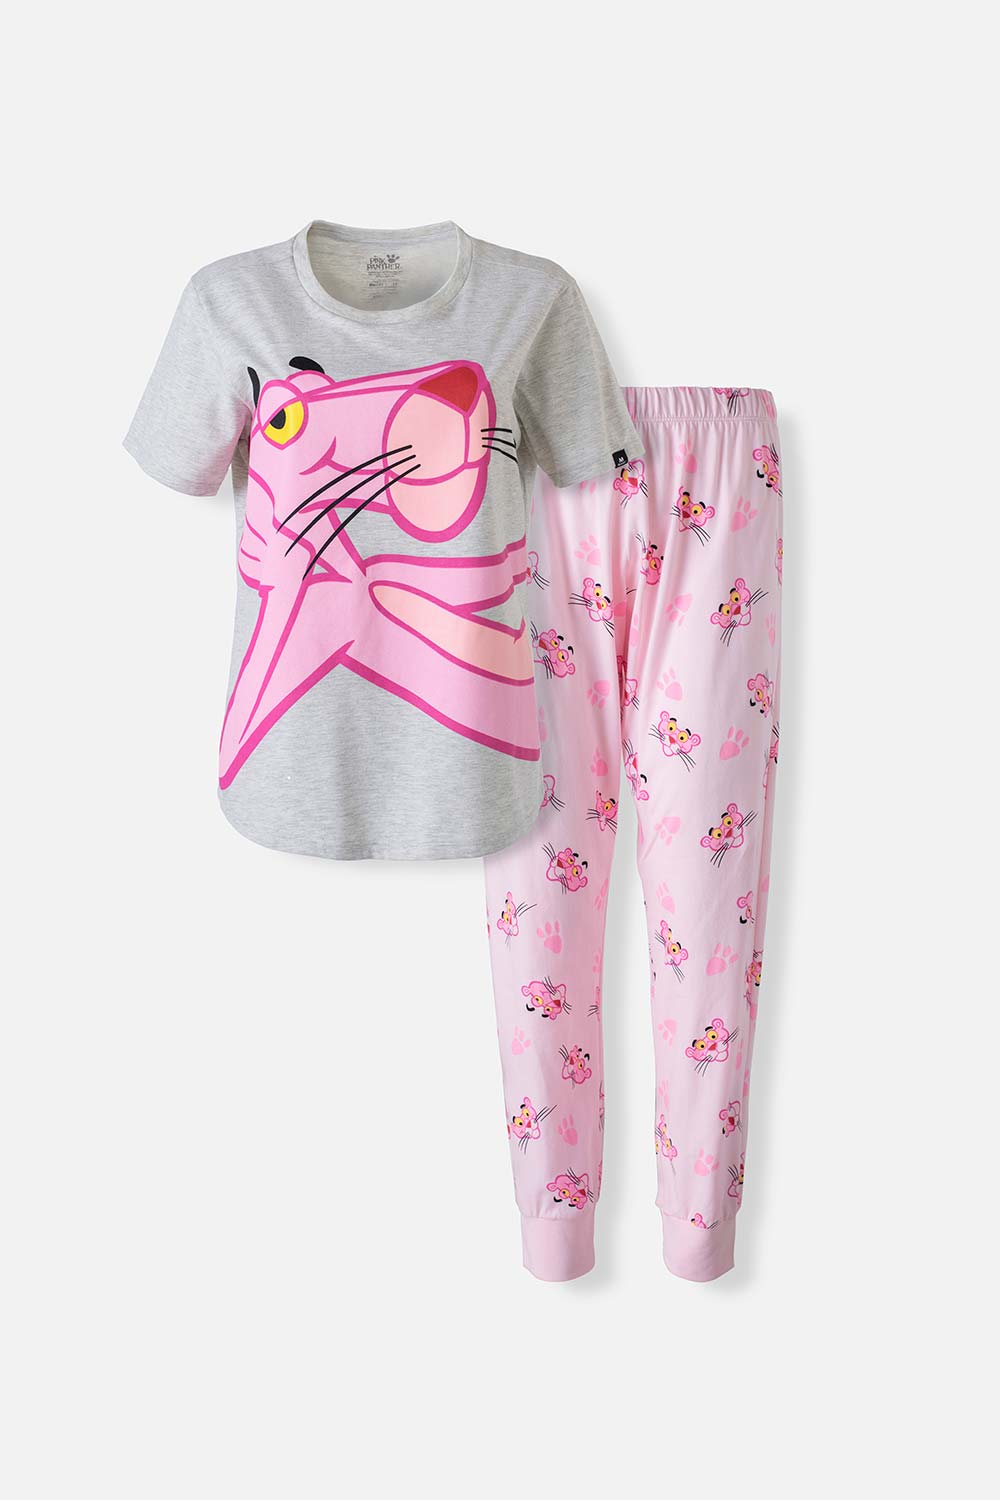 Pijama de la Pantera Rosa gris y rosada de pantalón largo para mujer XS-0